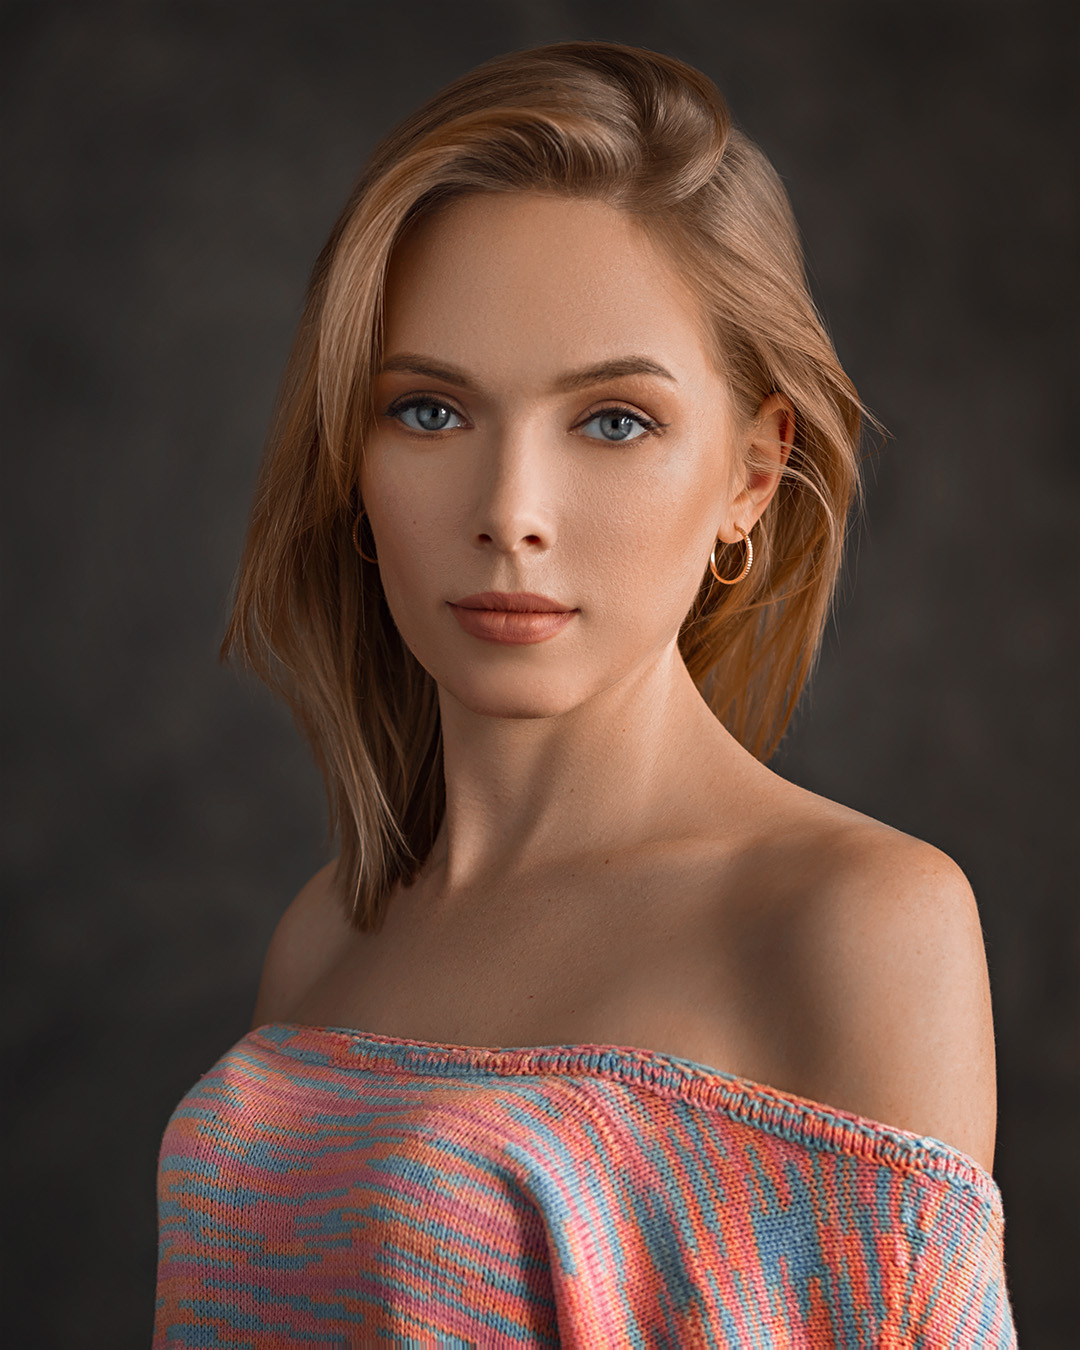 People 1080x1350 Evgeny Sibiraev women model bare shoulders blonde portrait blue eyes